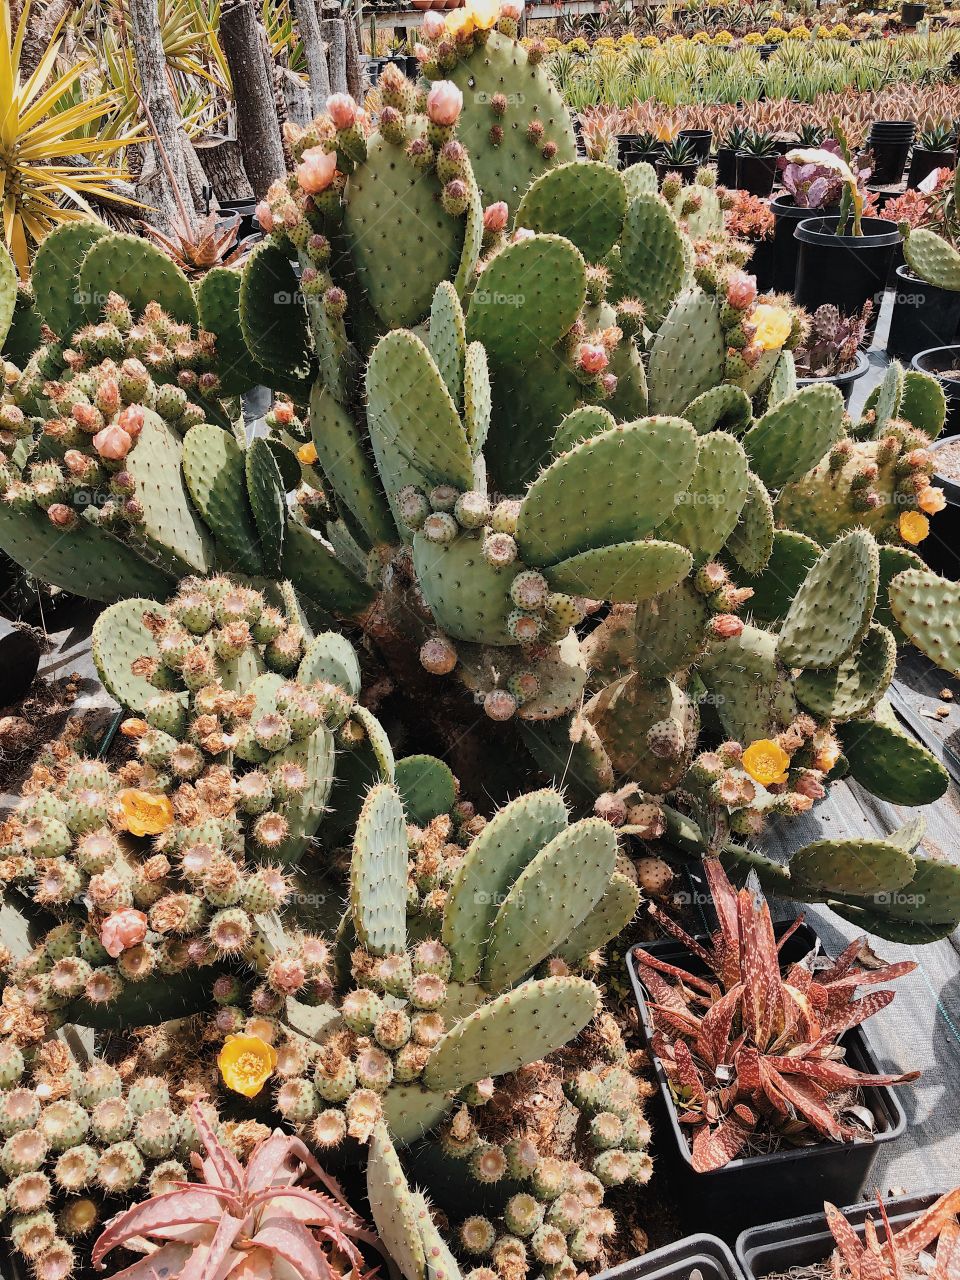 Cactus & succulent heaven, California.